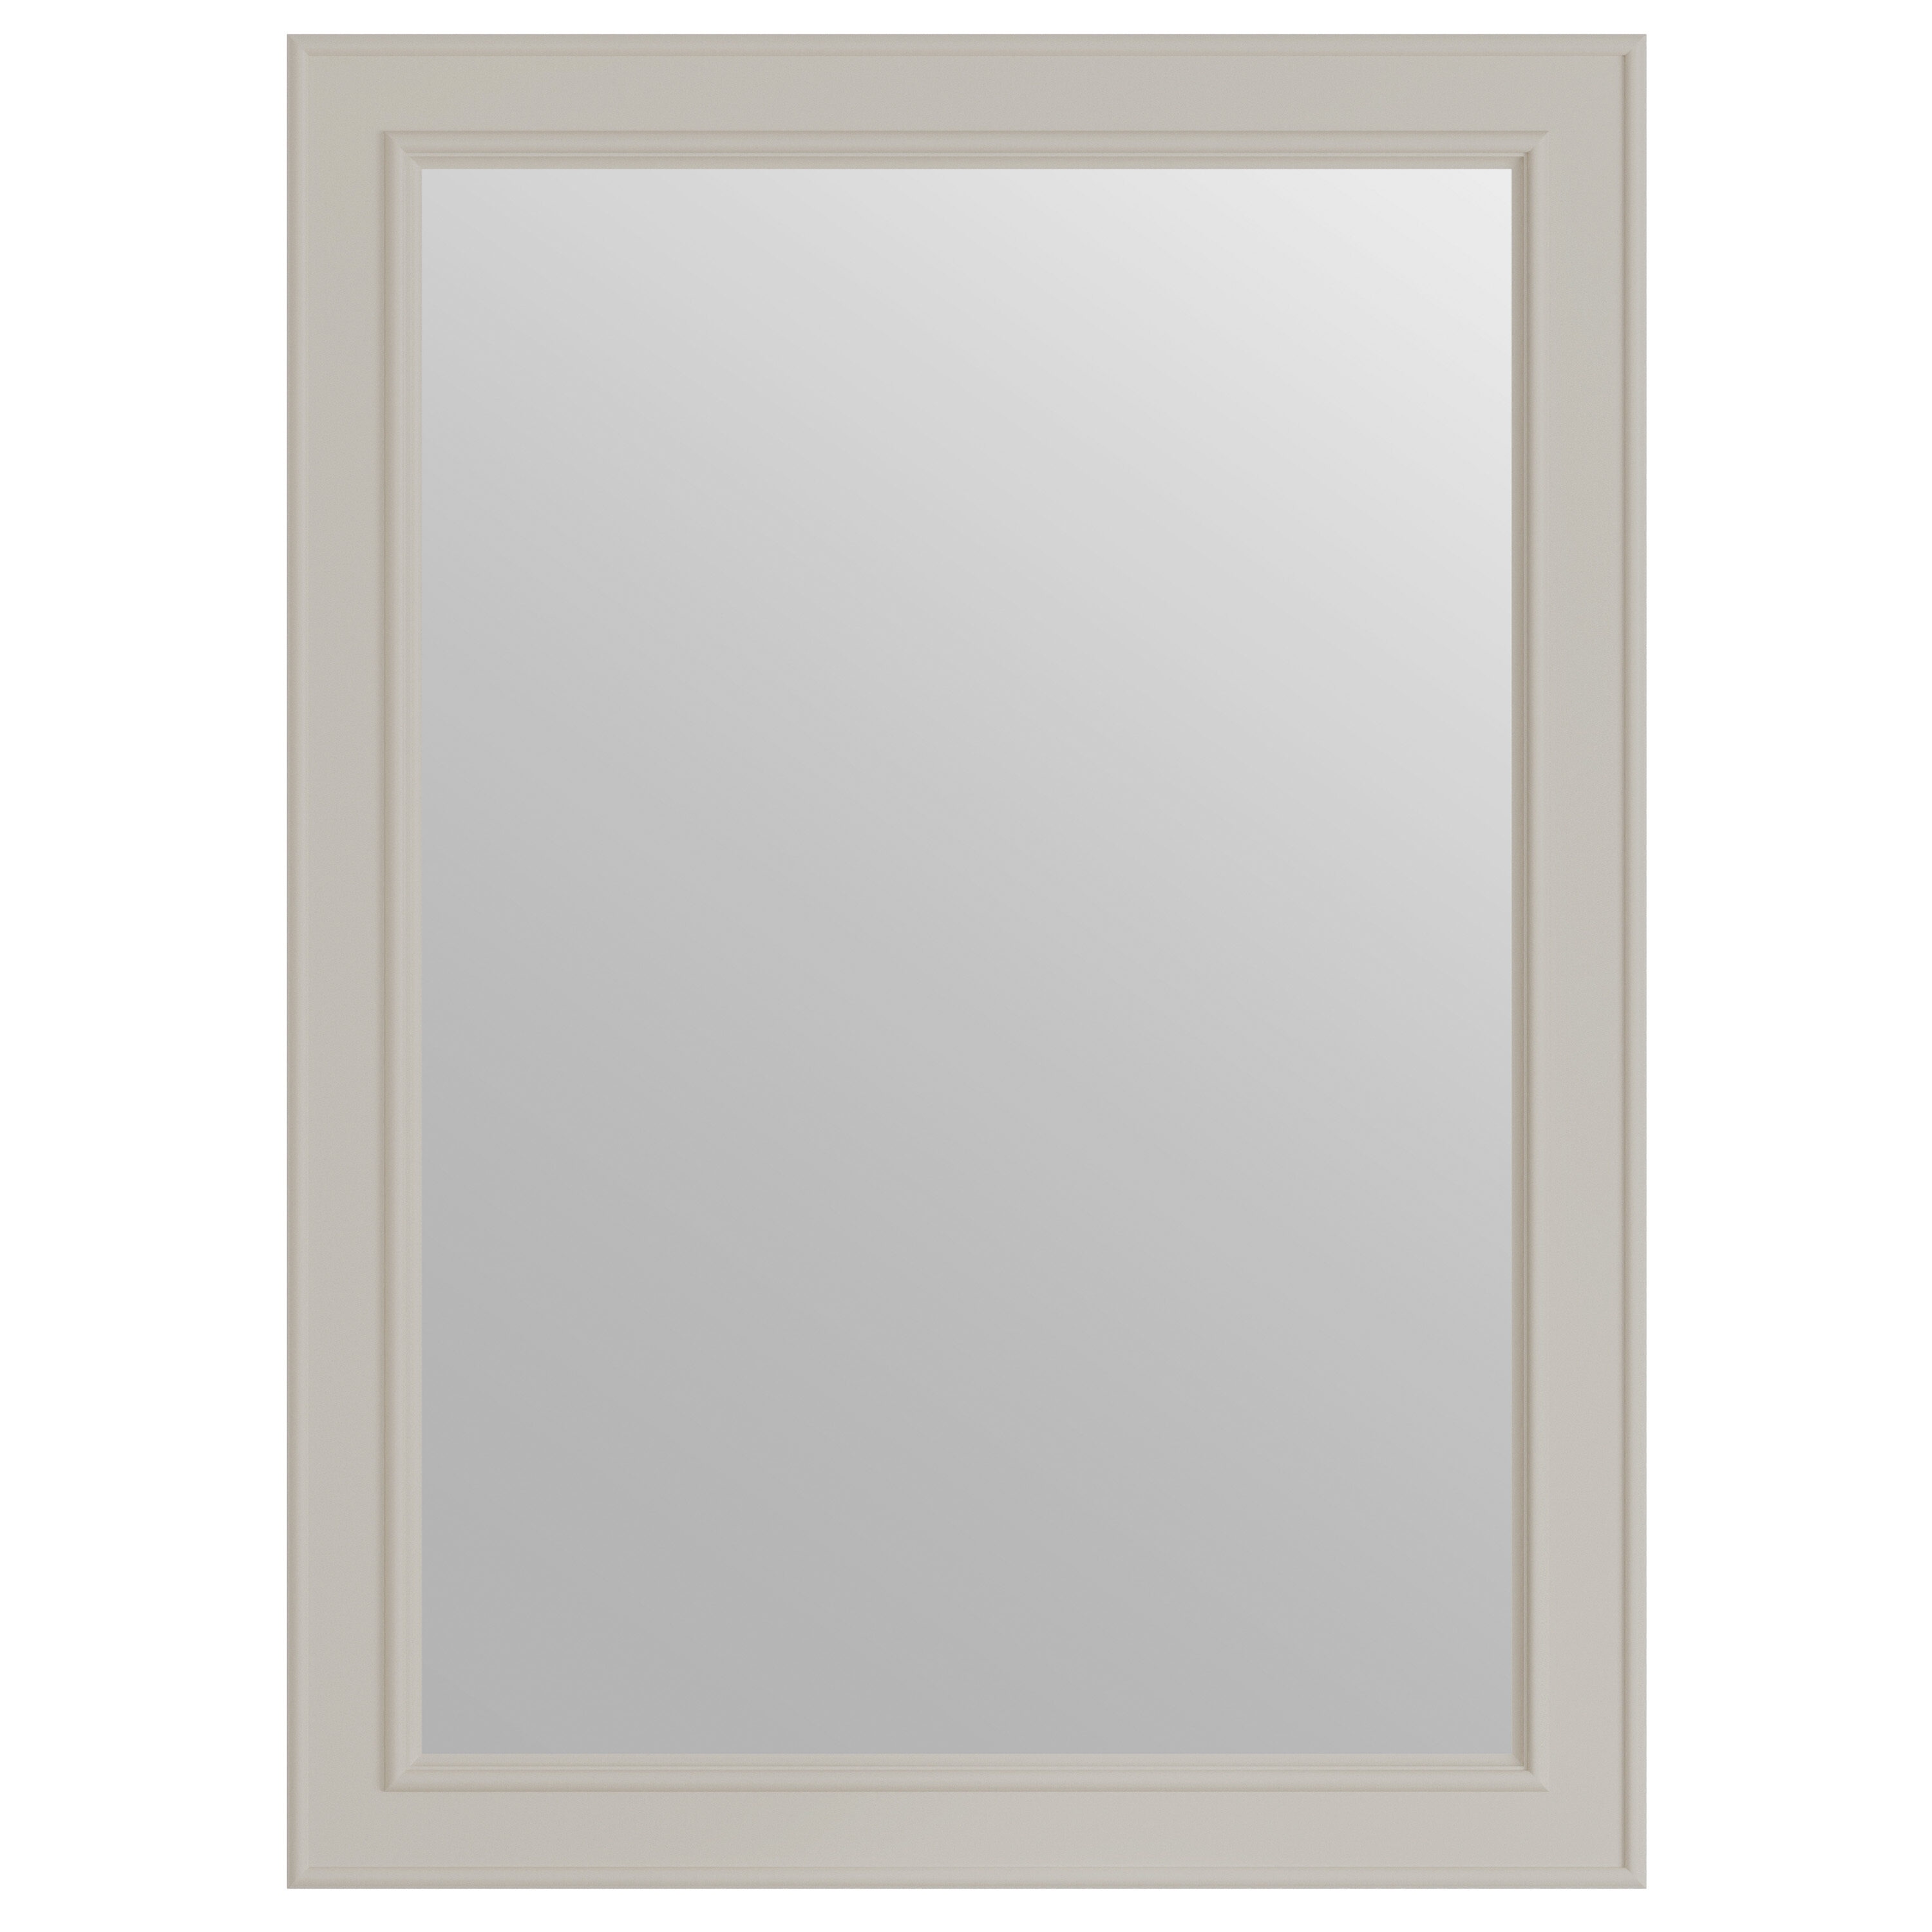 Wrightsville 22-in x 30-in Flaxen Rectangular Framed Bathroom Vanity Mirror in Off-White | - allen + roth 1116MR-22-320